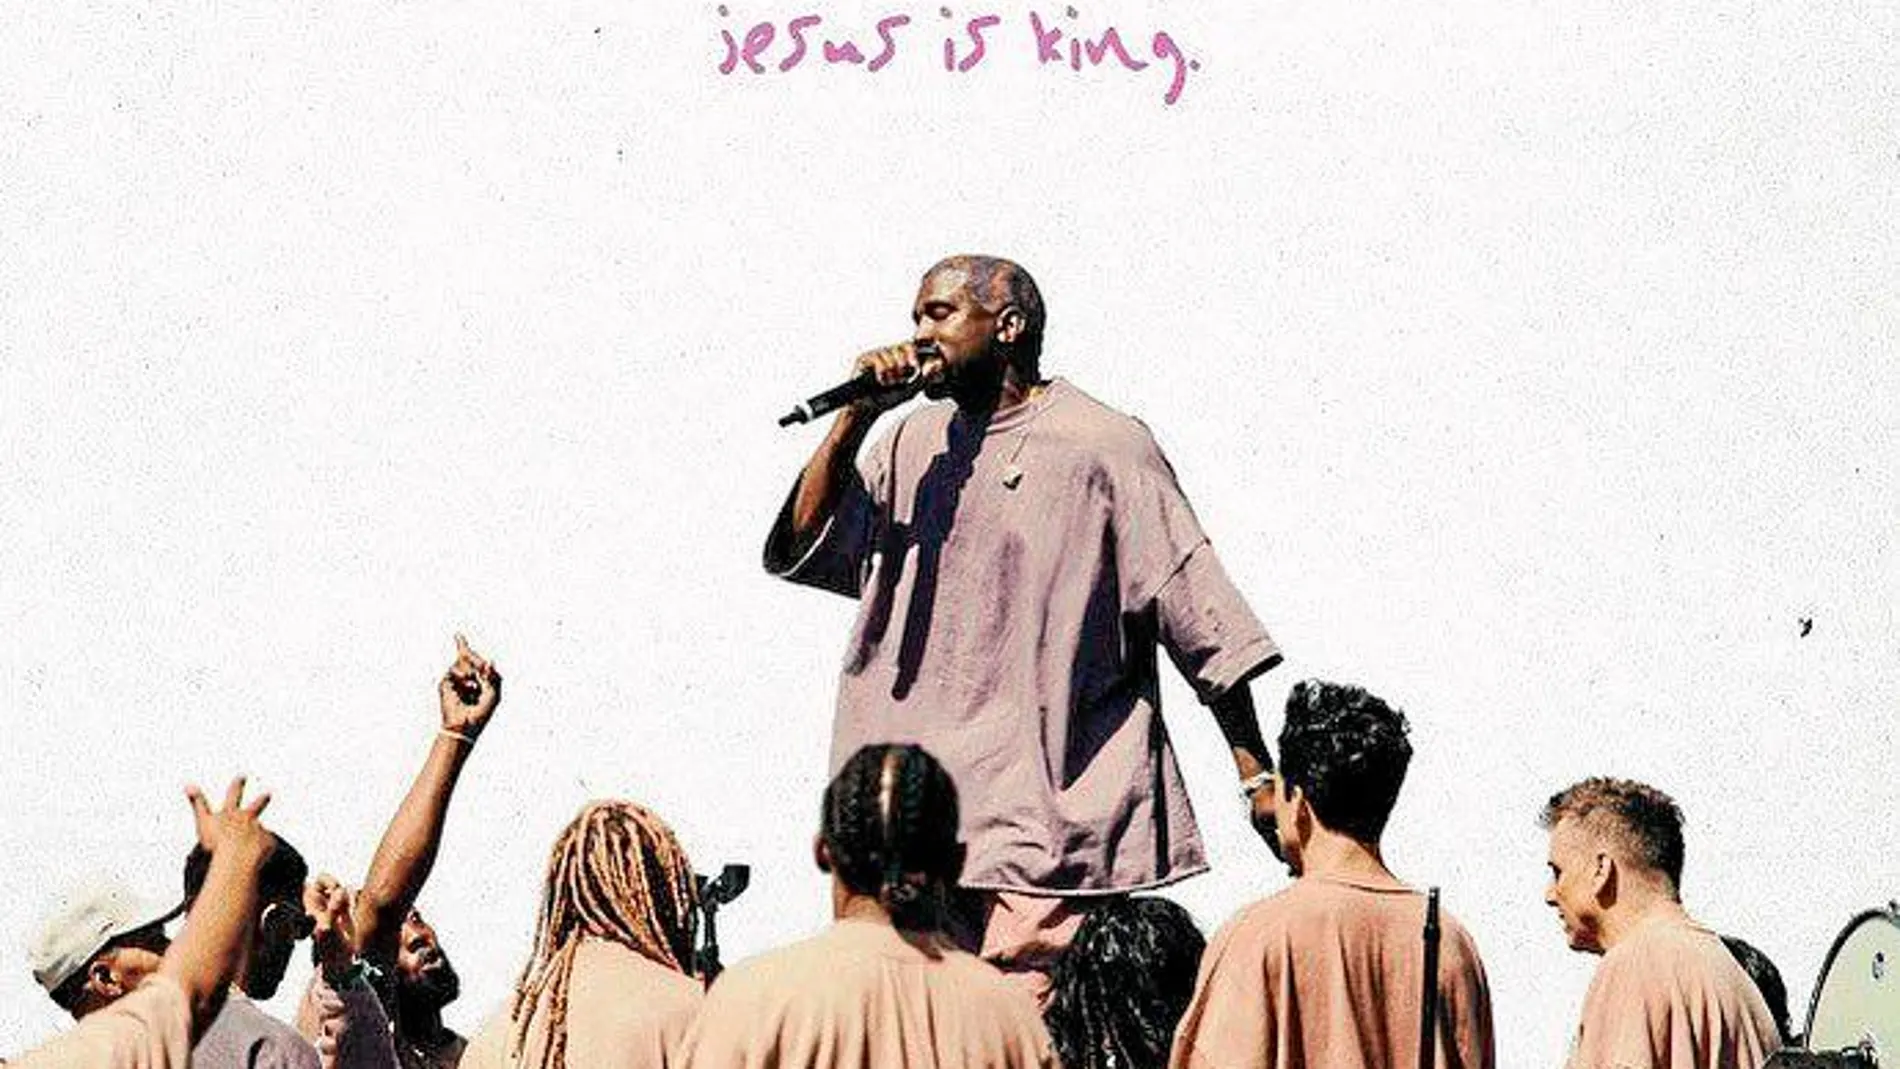 Una imagen del anunciado y pospuesto trabajo de Kanye West, «Jesus Is King», que podría ser una misa o un sermón discográfico